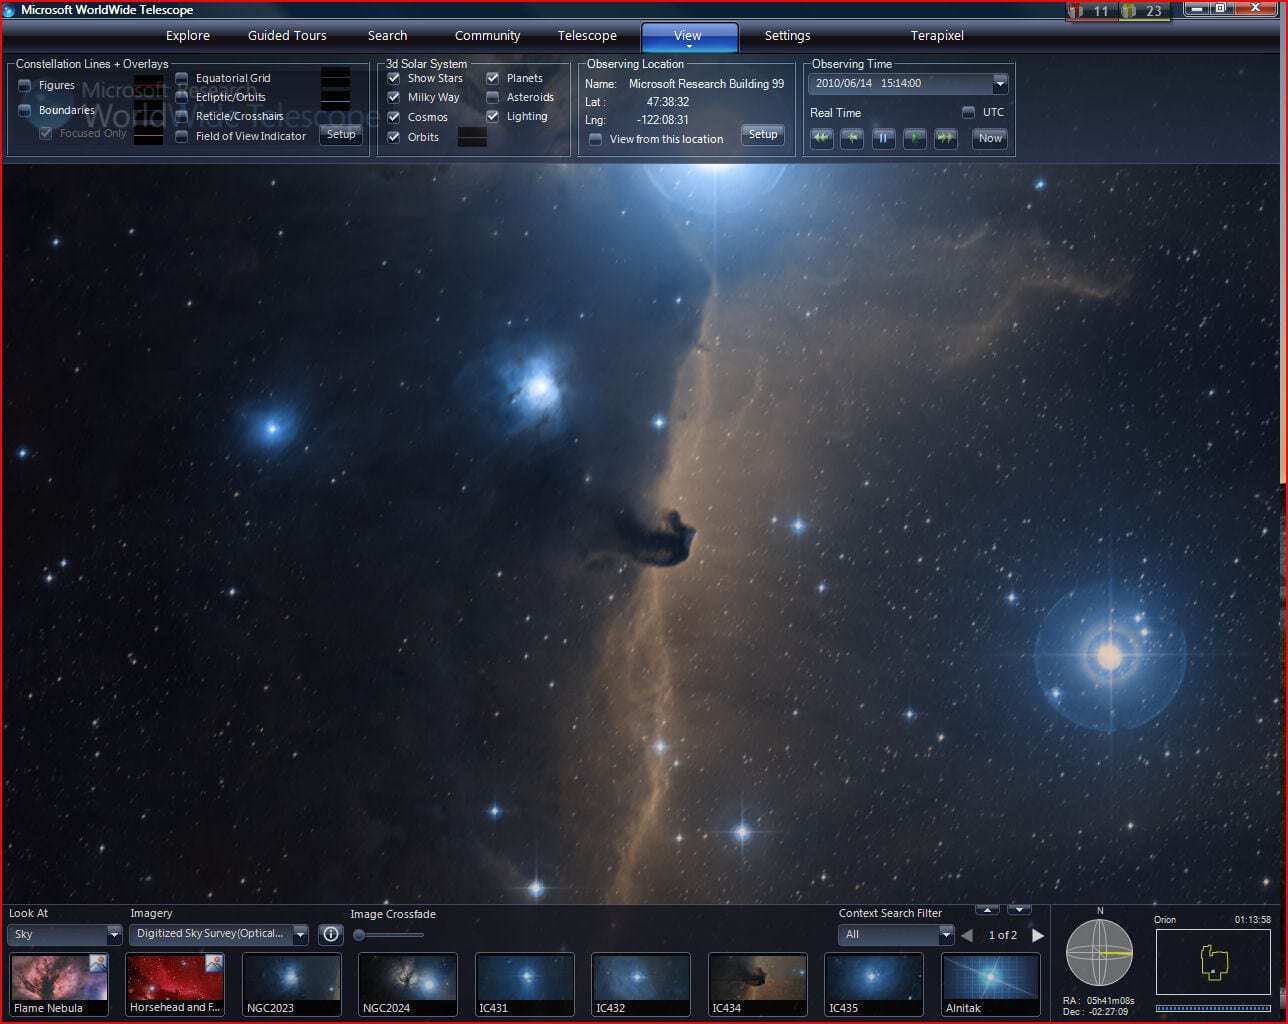 Terrapixel_Horsehead nebula